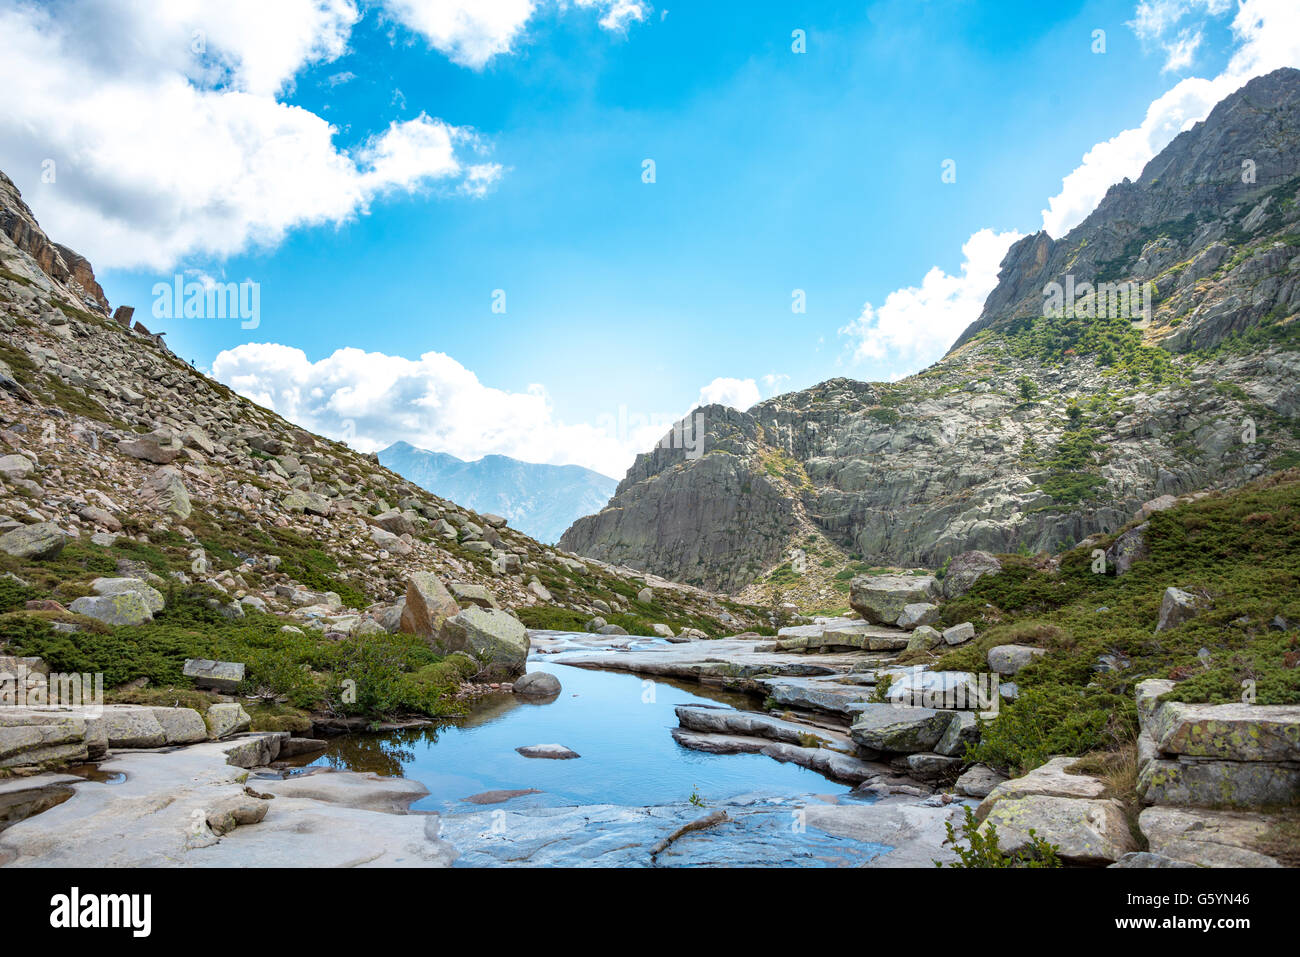 Piscine dans les montagnes, rivière Golo, Parc Naturel de la Corse, Parc naturel régional de Corse, Corse, France Banque D'Images